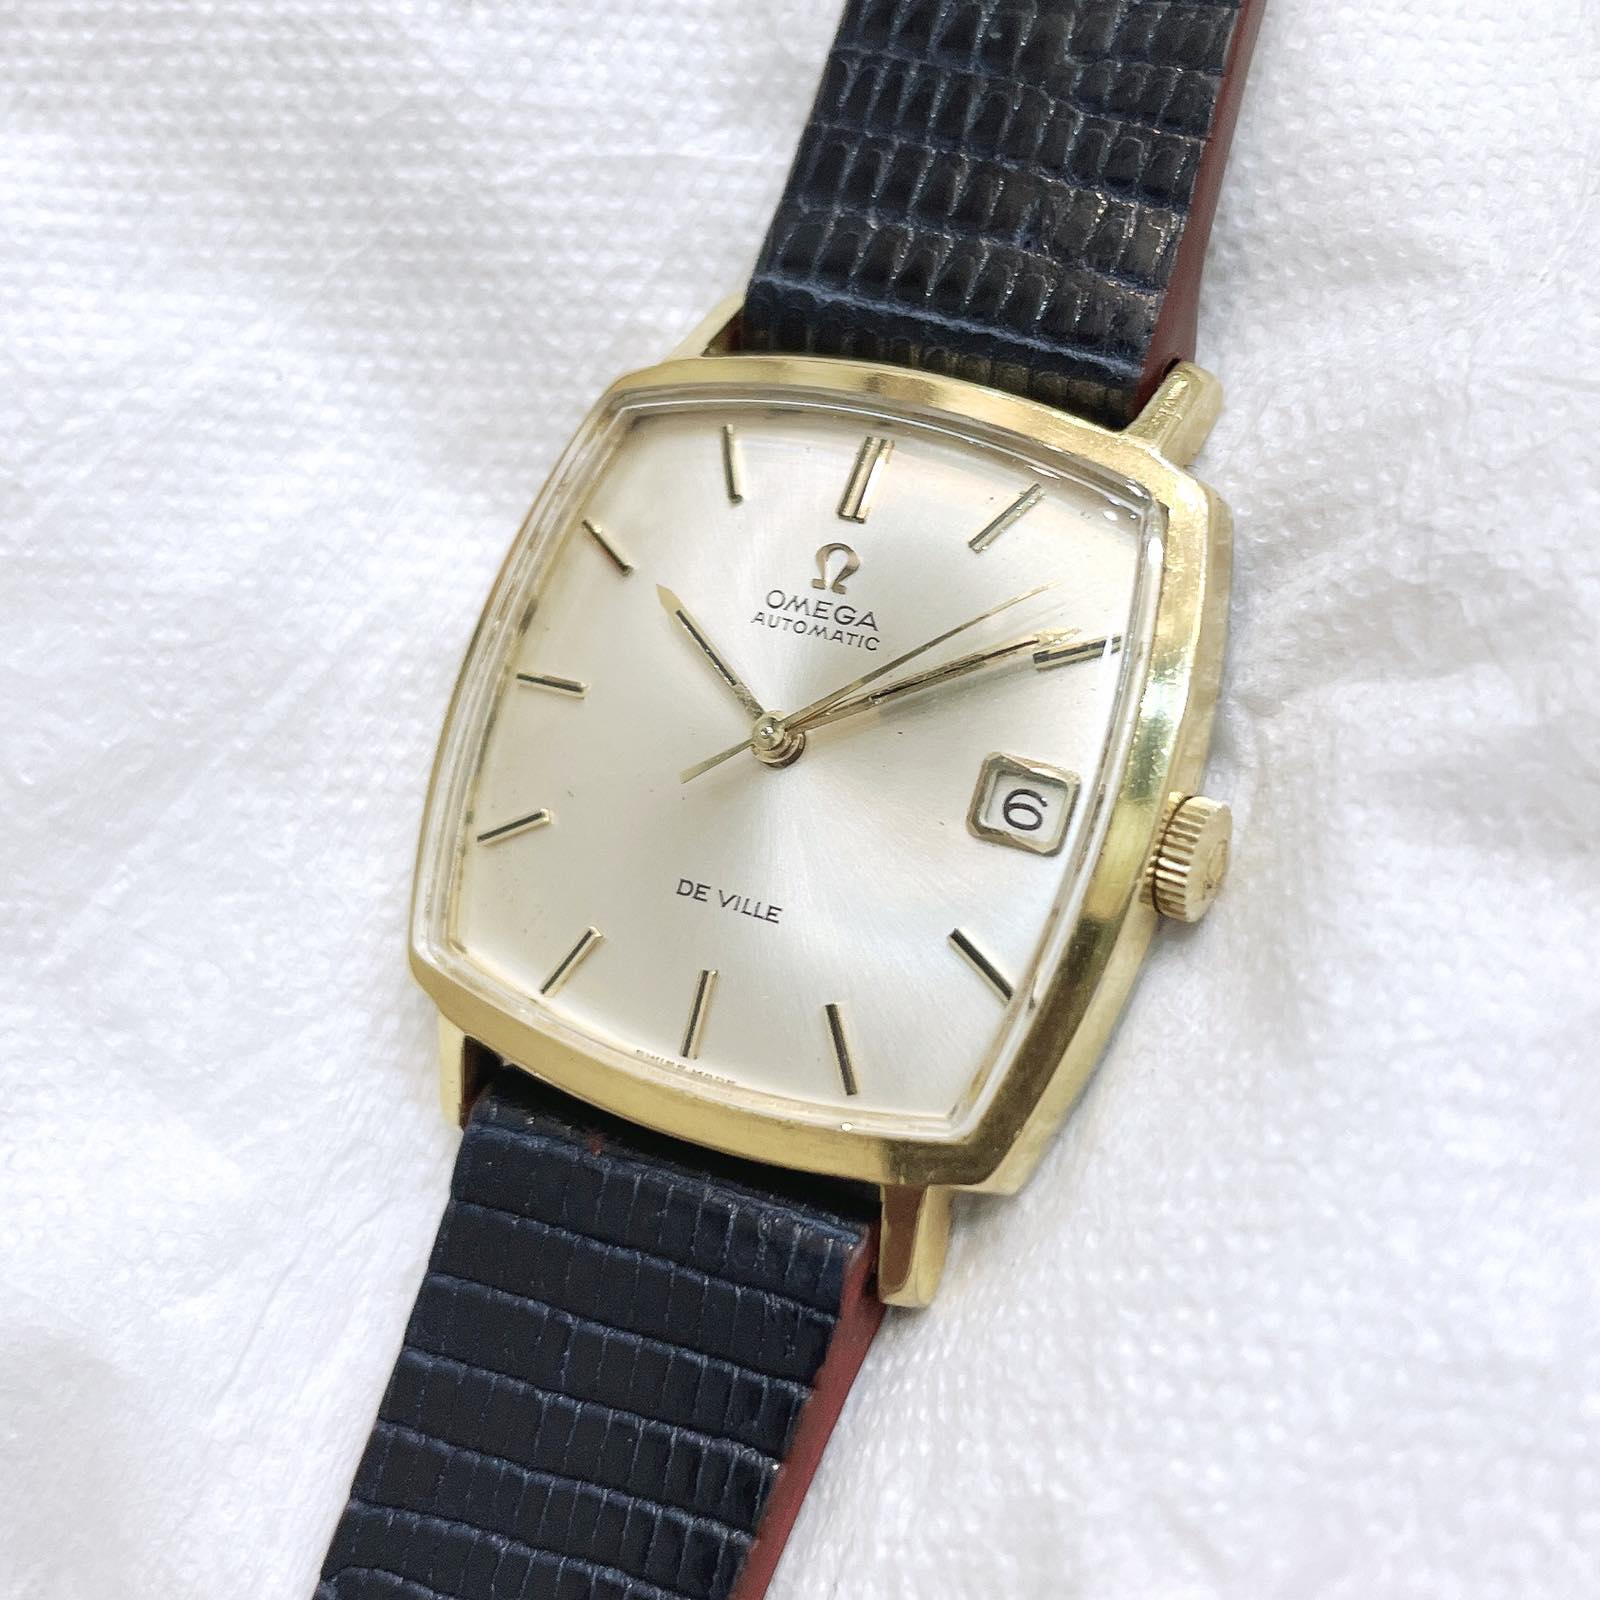 Đồng hồ cổ Omega automatic De Ville chính hãng thuỵ sỹ